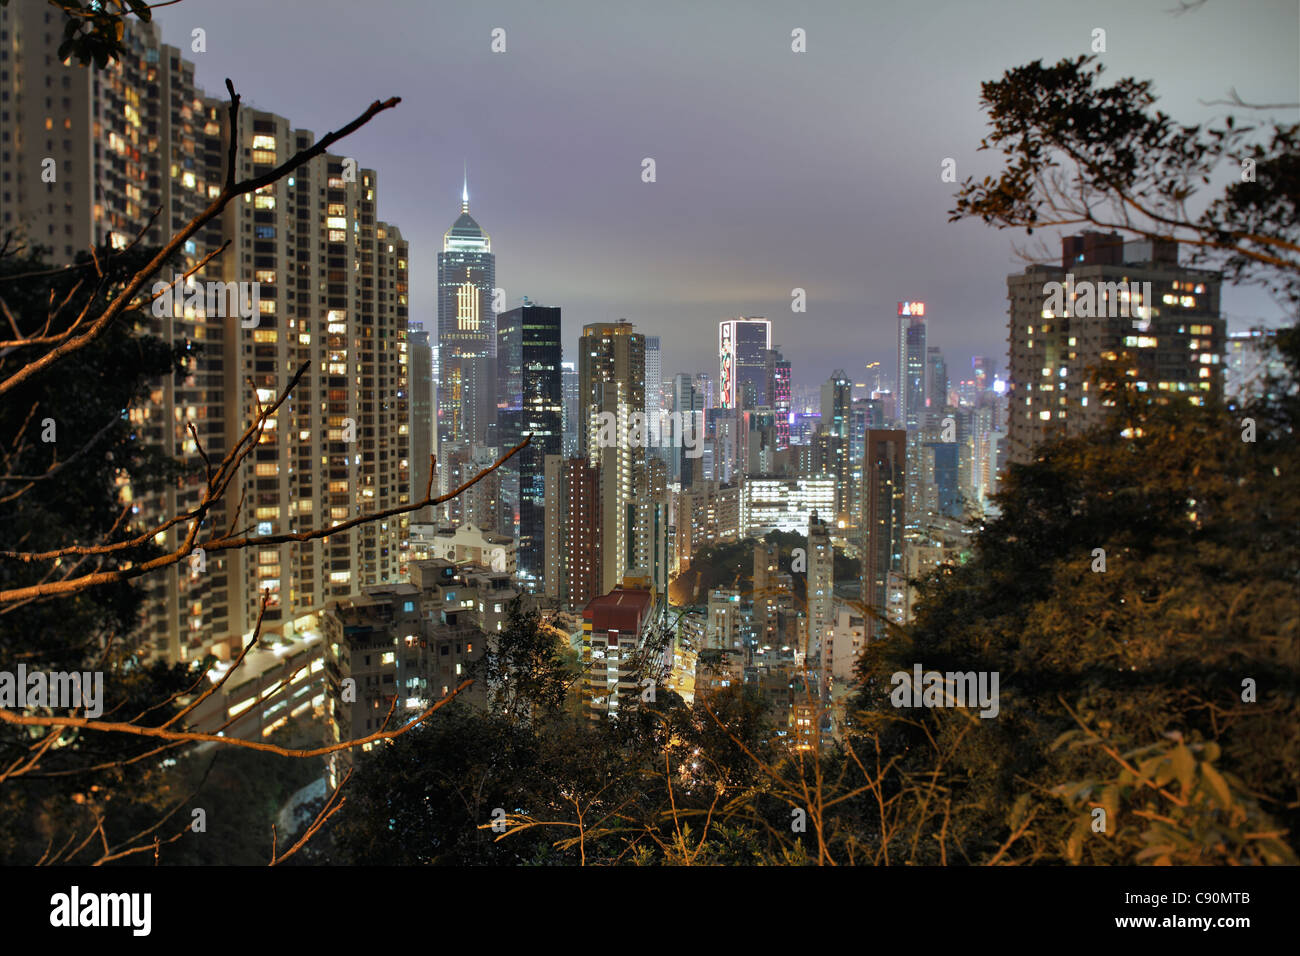 Hong kong Skyline and Wan Chai at night, Bamboo Grove (l), Grandview Tower (r), Hong Kong, China Stock Photo